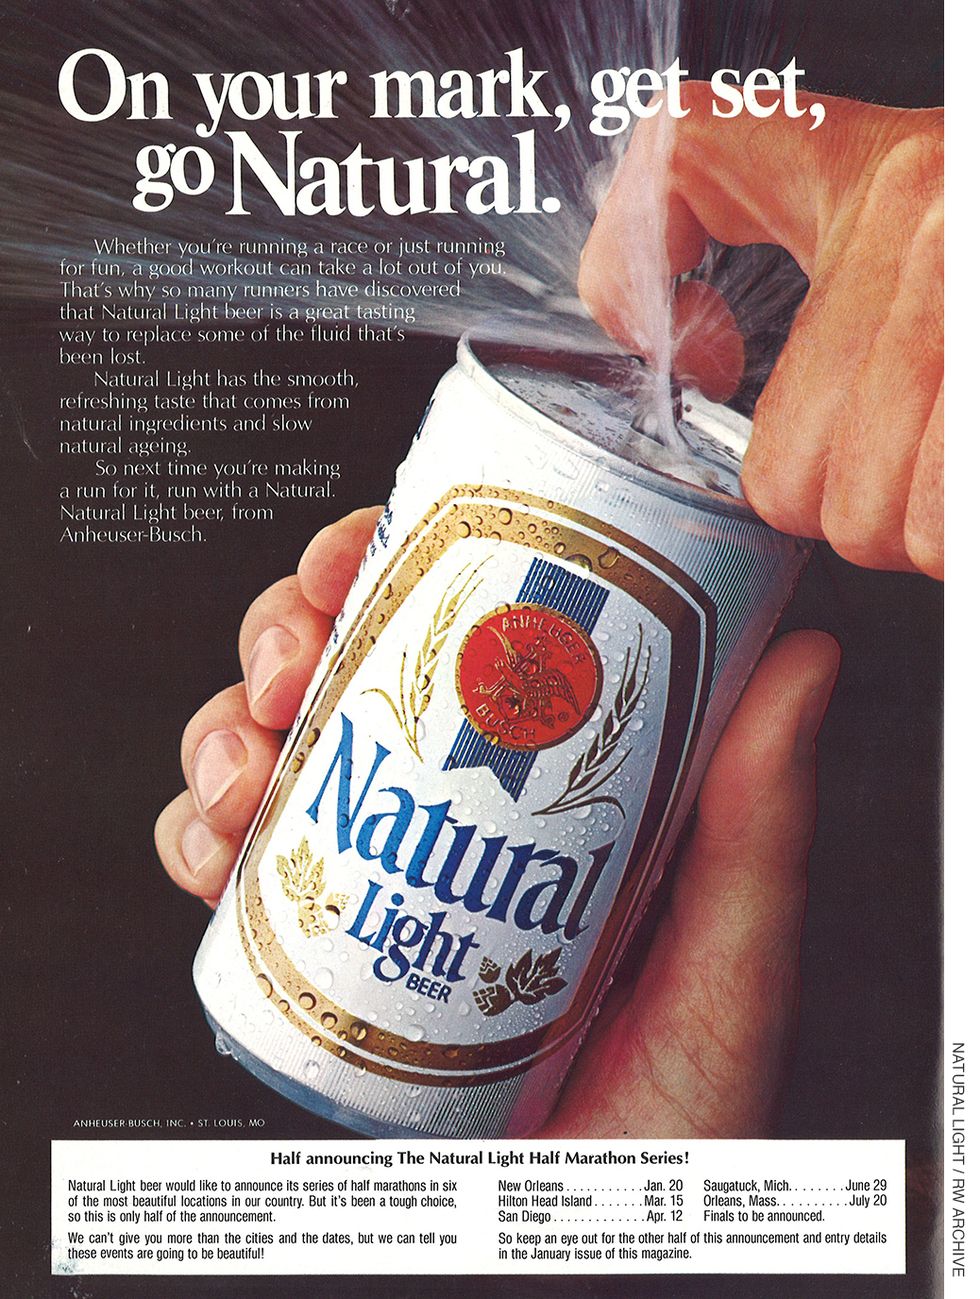 1979 Natural Light beer